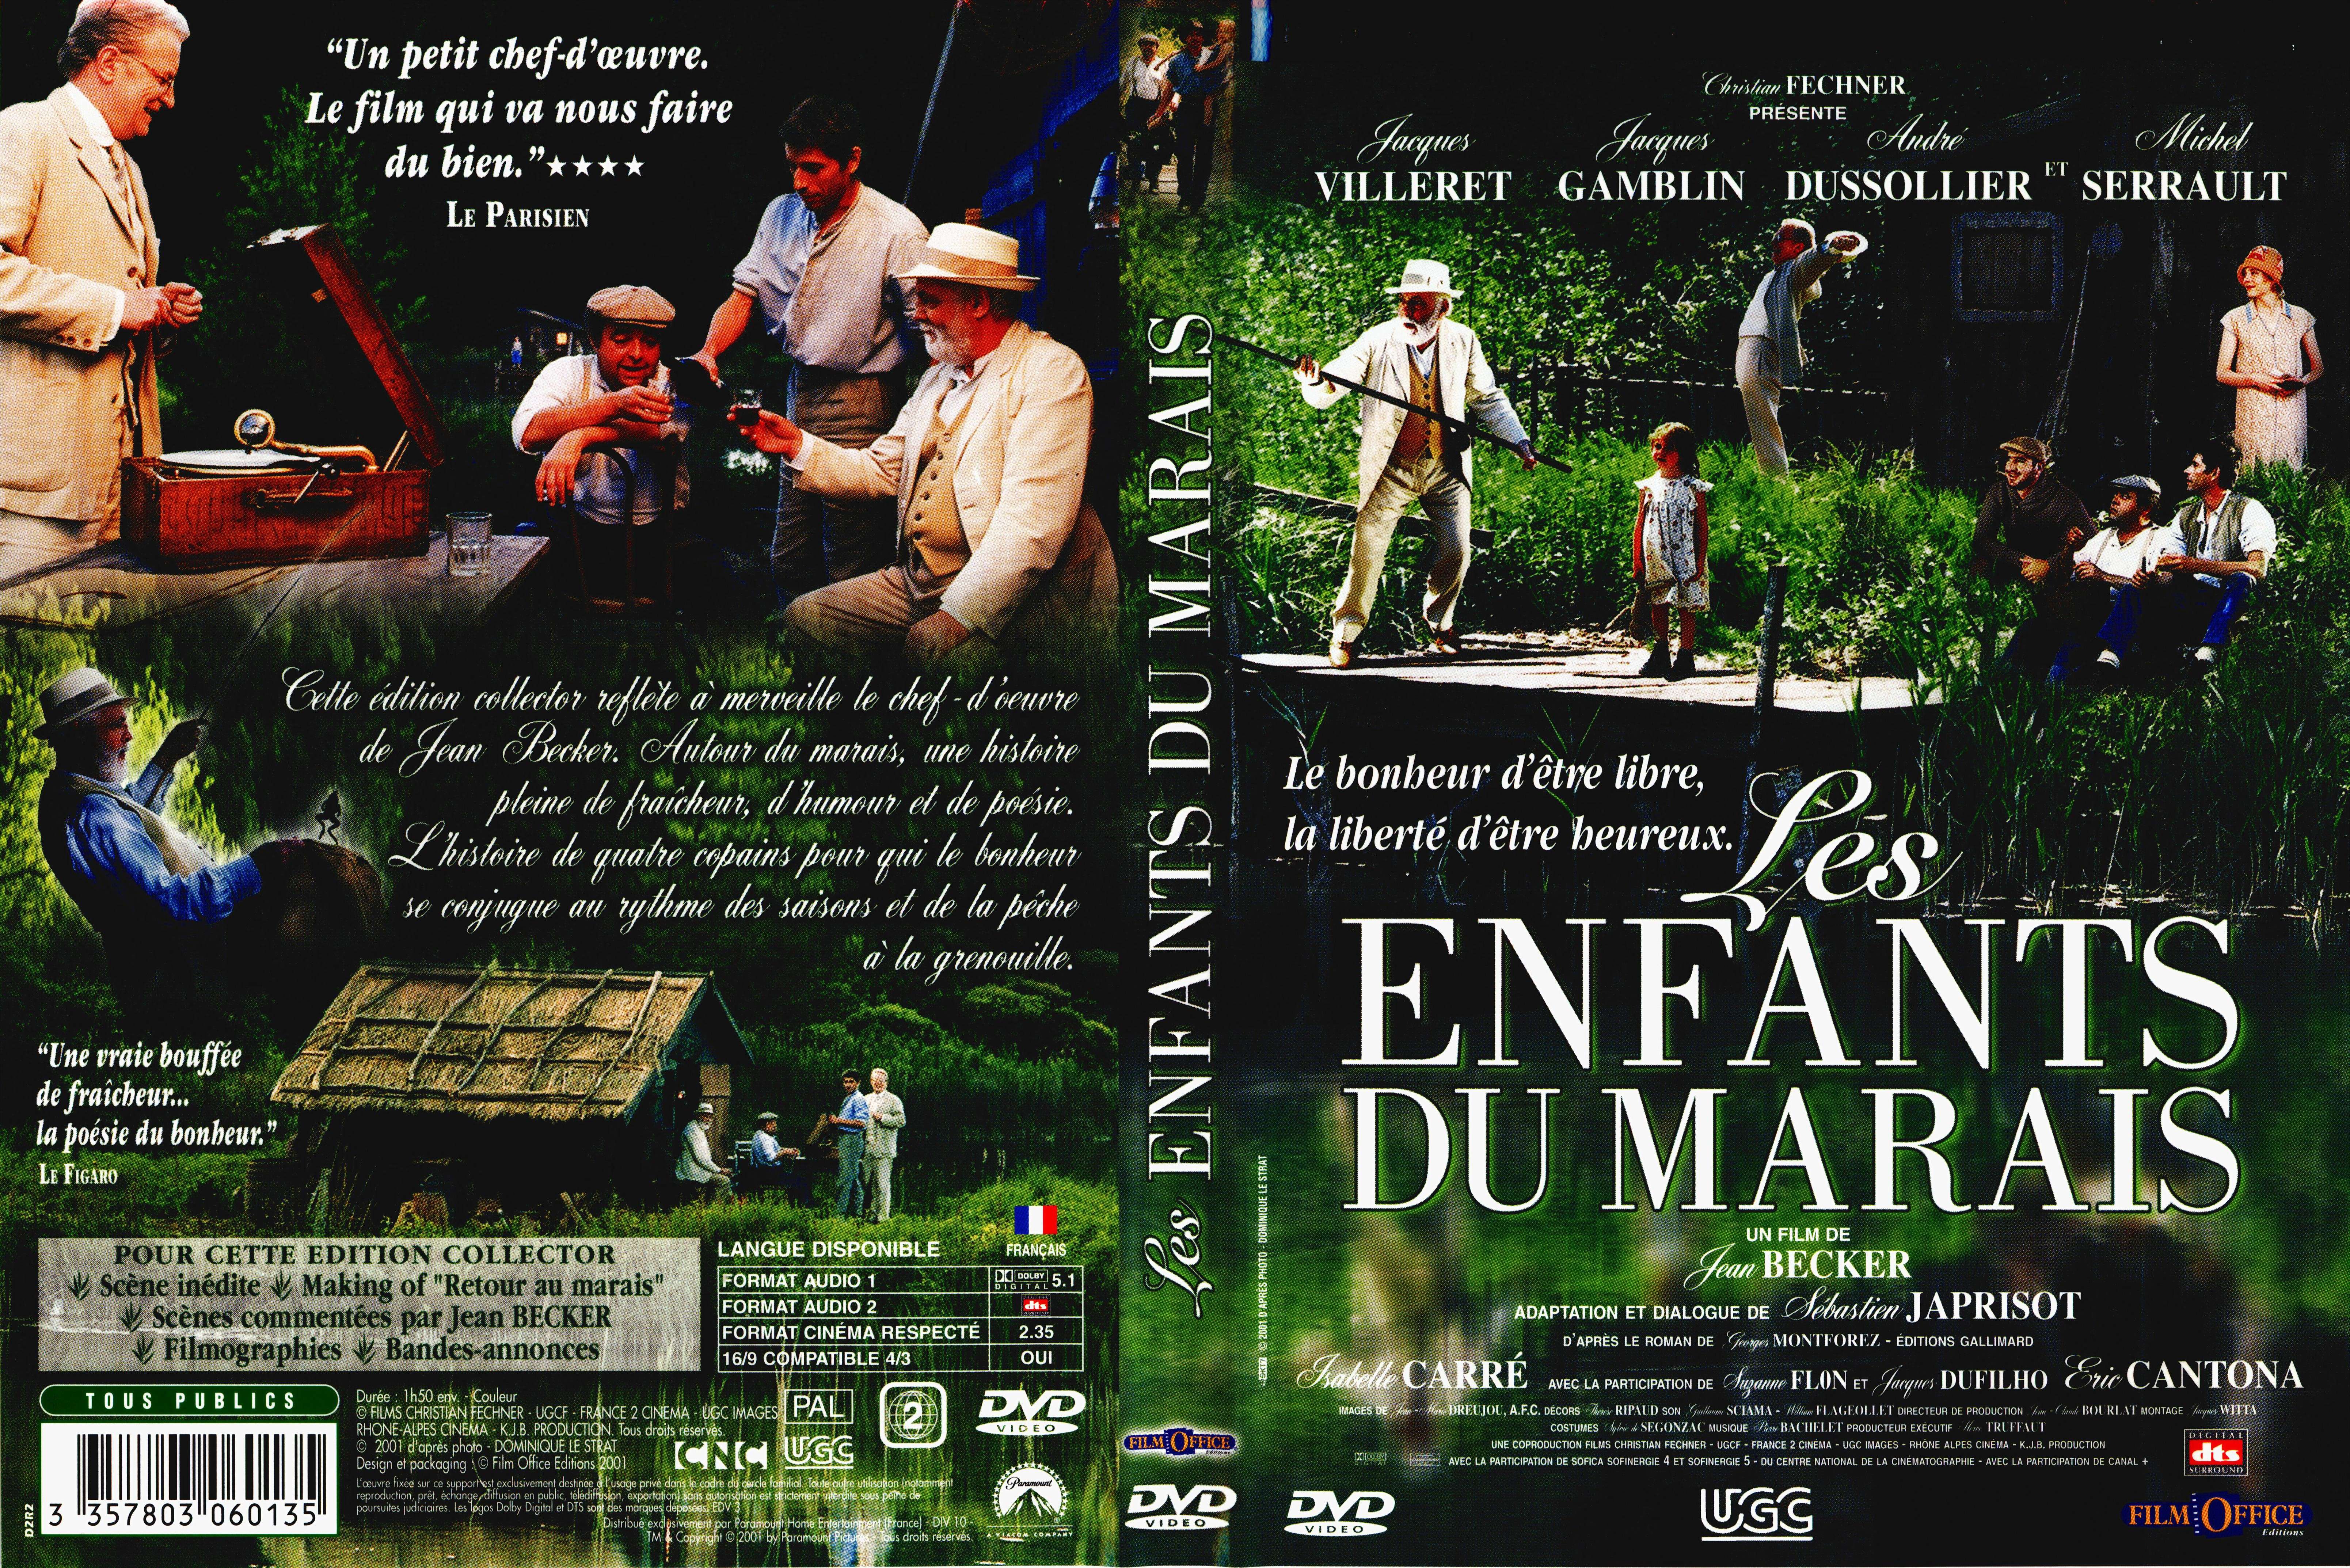 Jaquette DVD Les enfants du marais v2